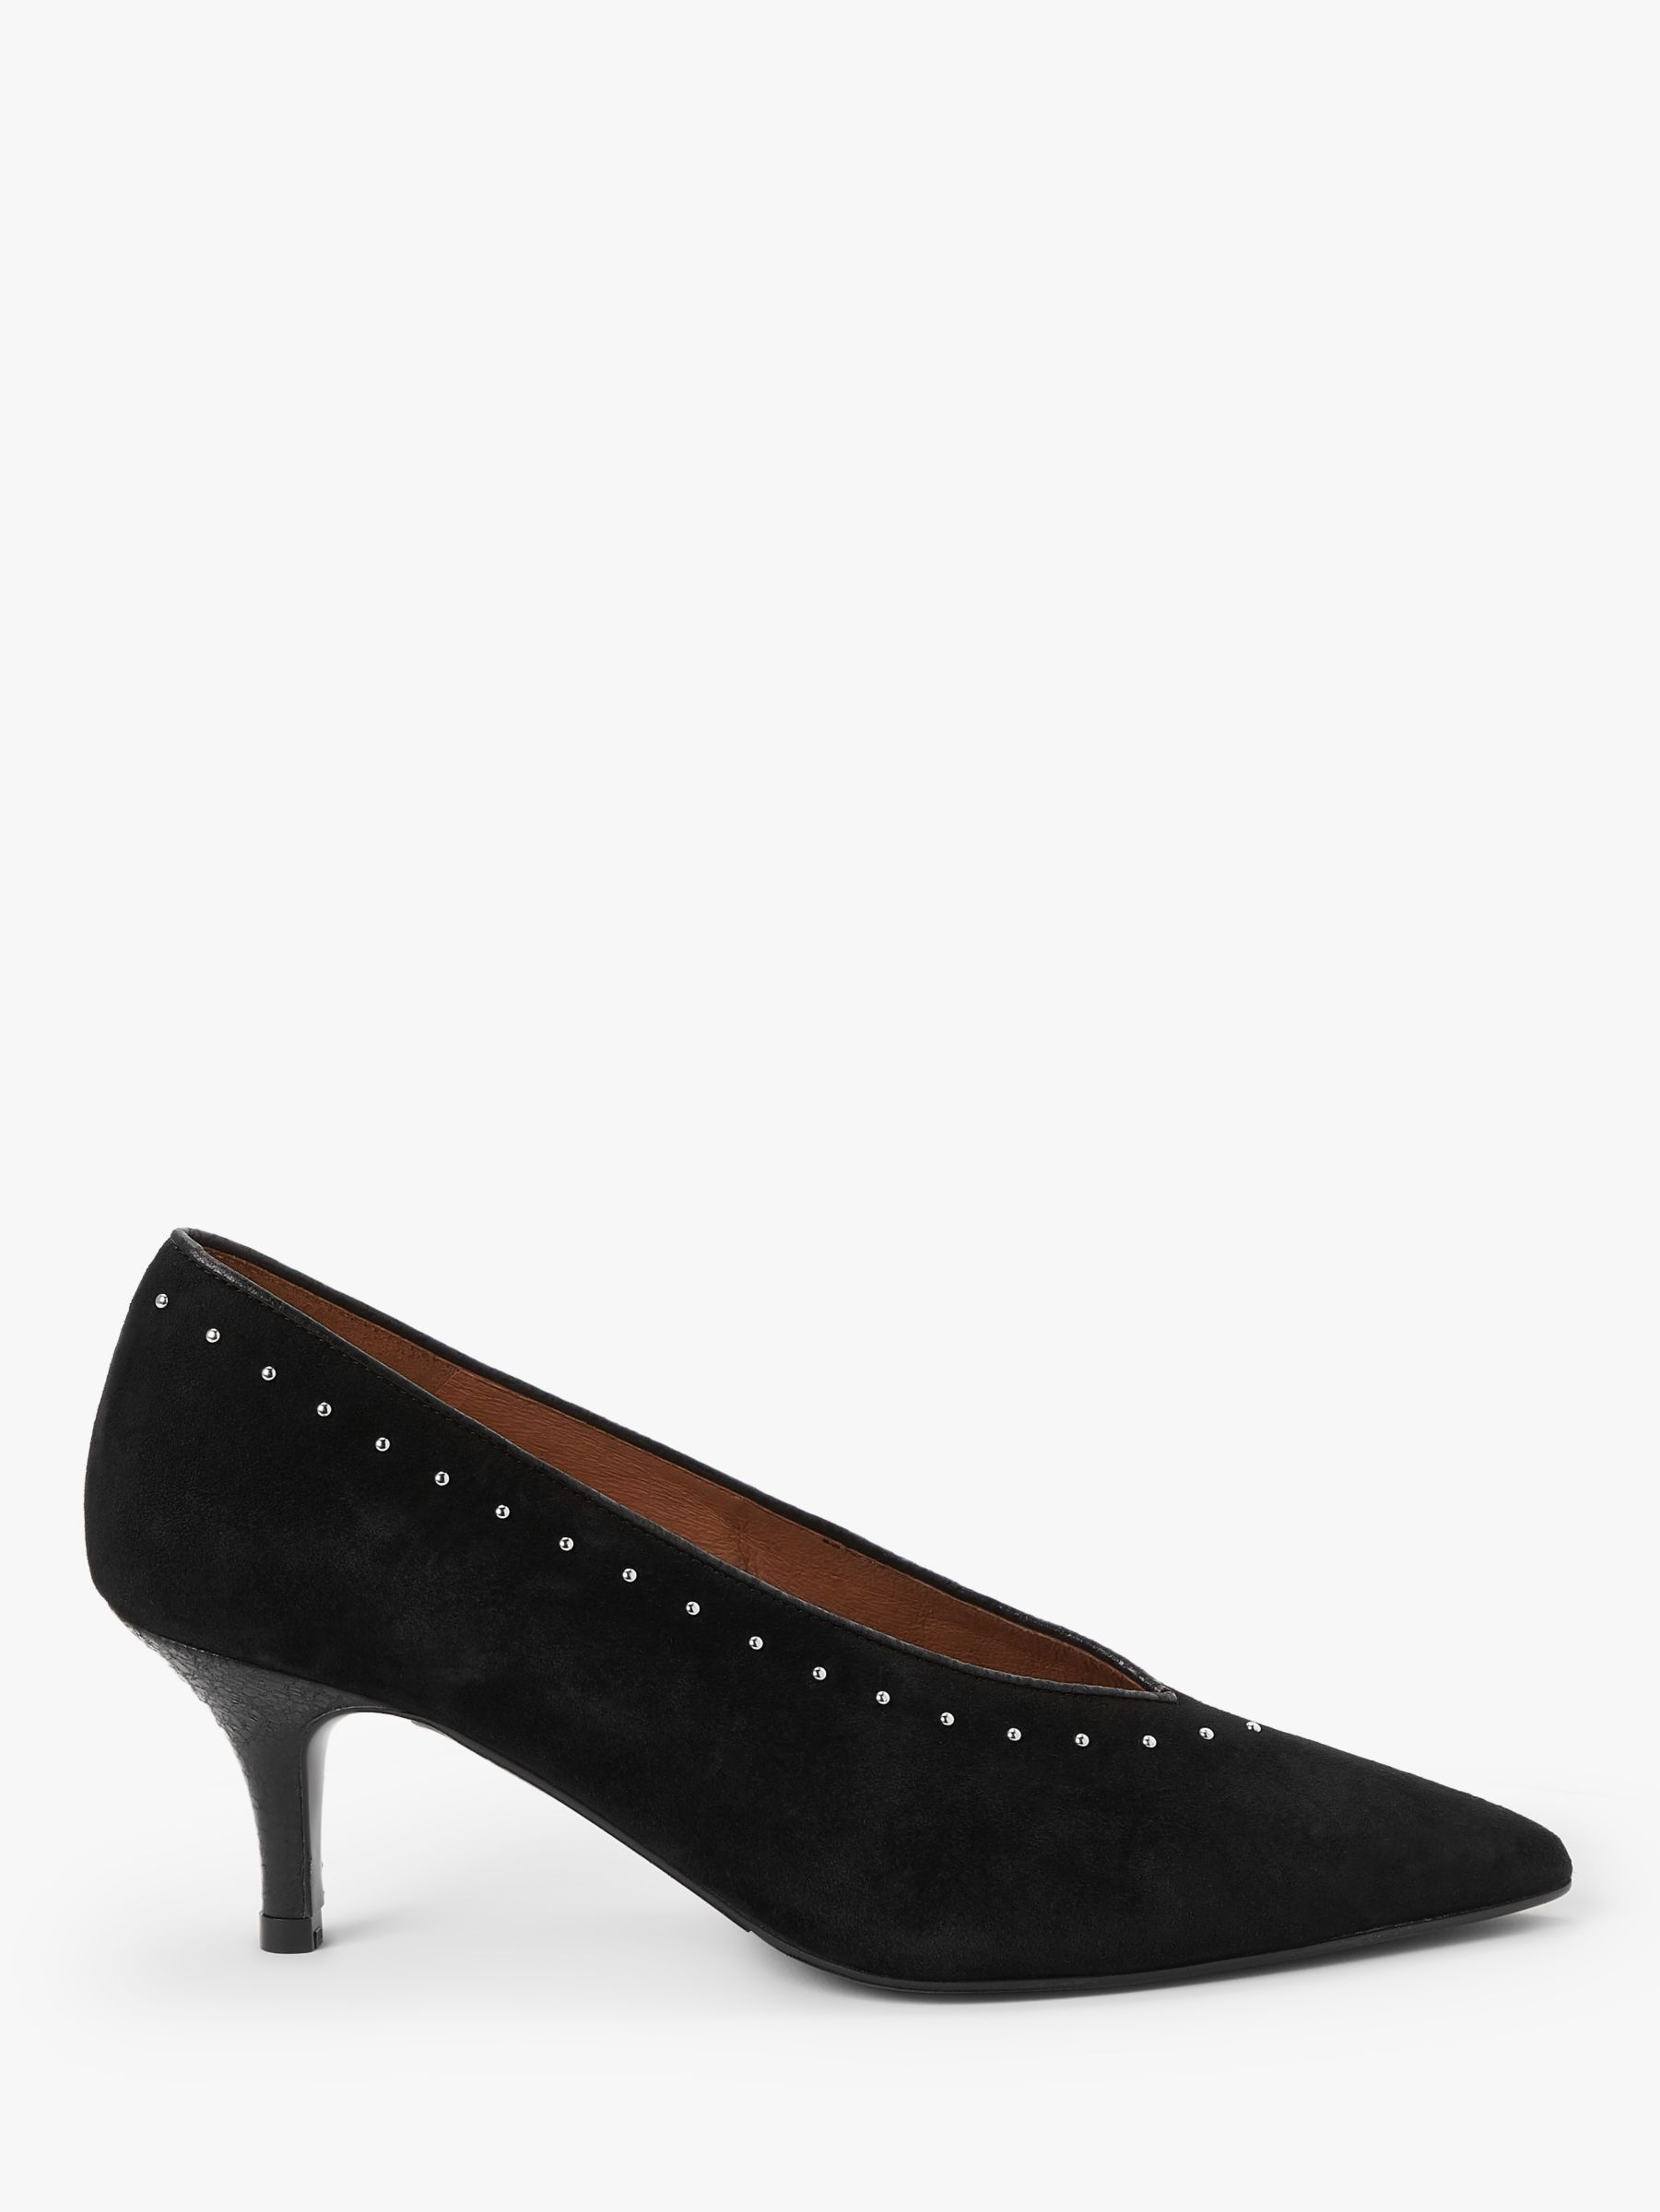 AND/OR Avolene Stud Kitten Heel Court Shoes, Black